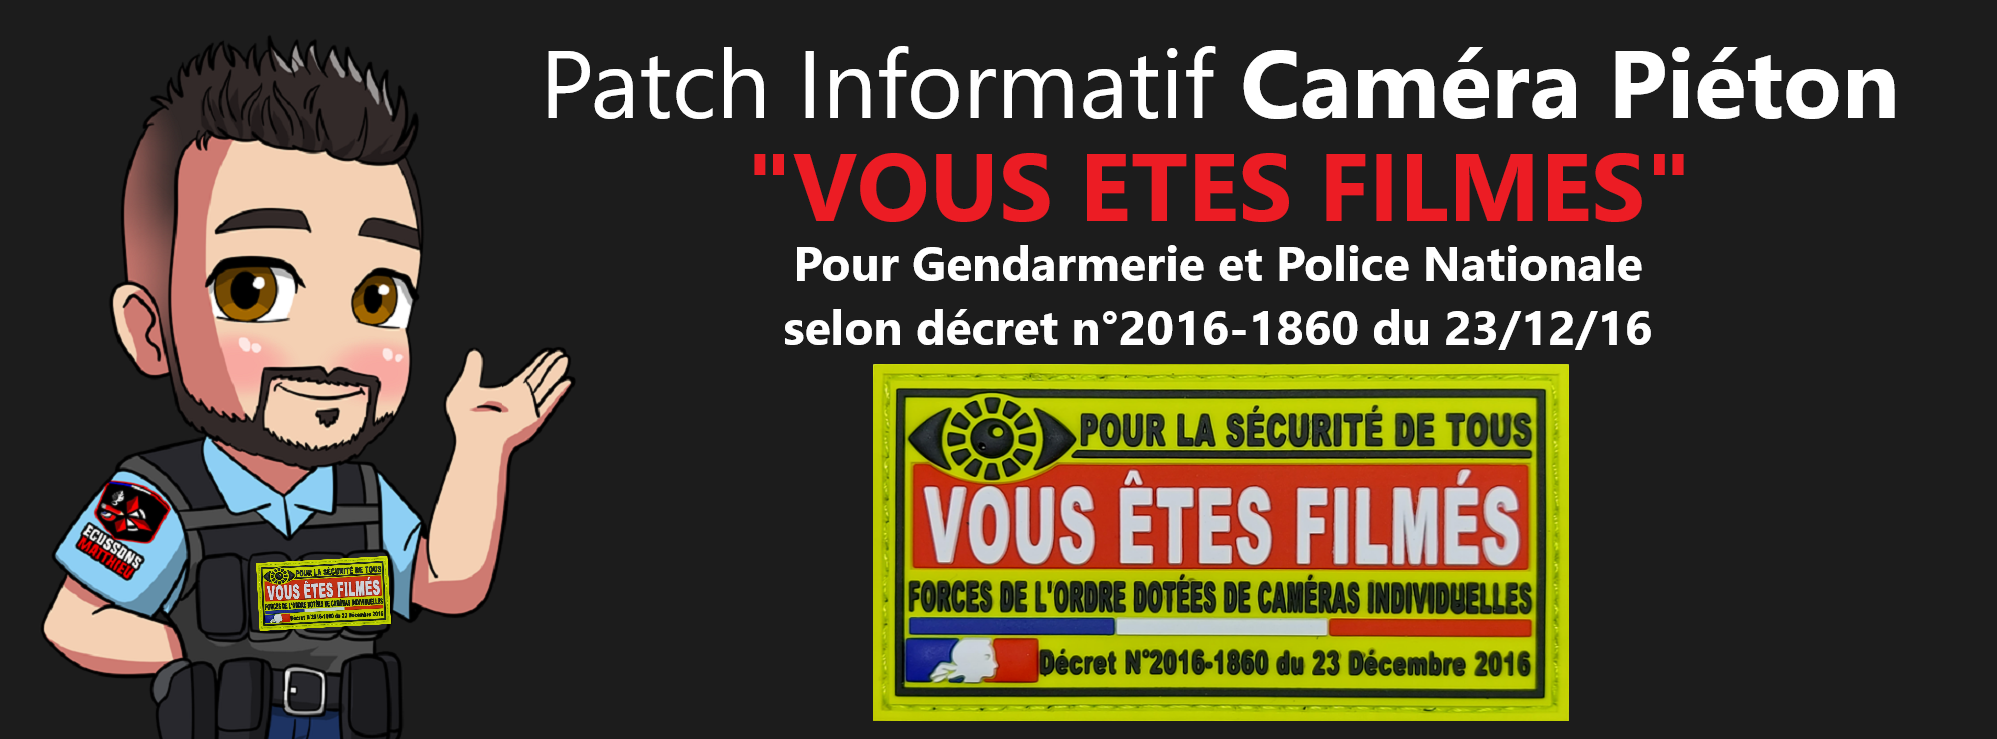 Patch informatif Caméra Piéton